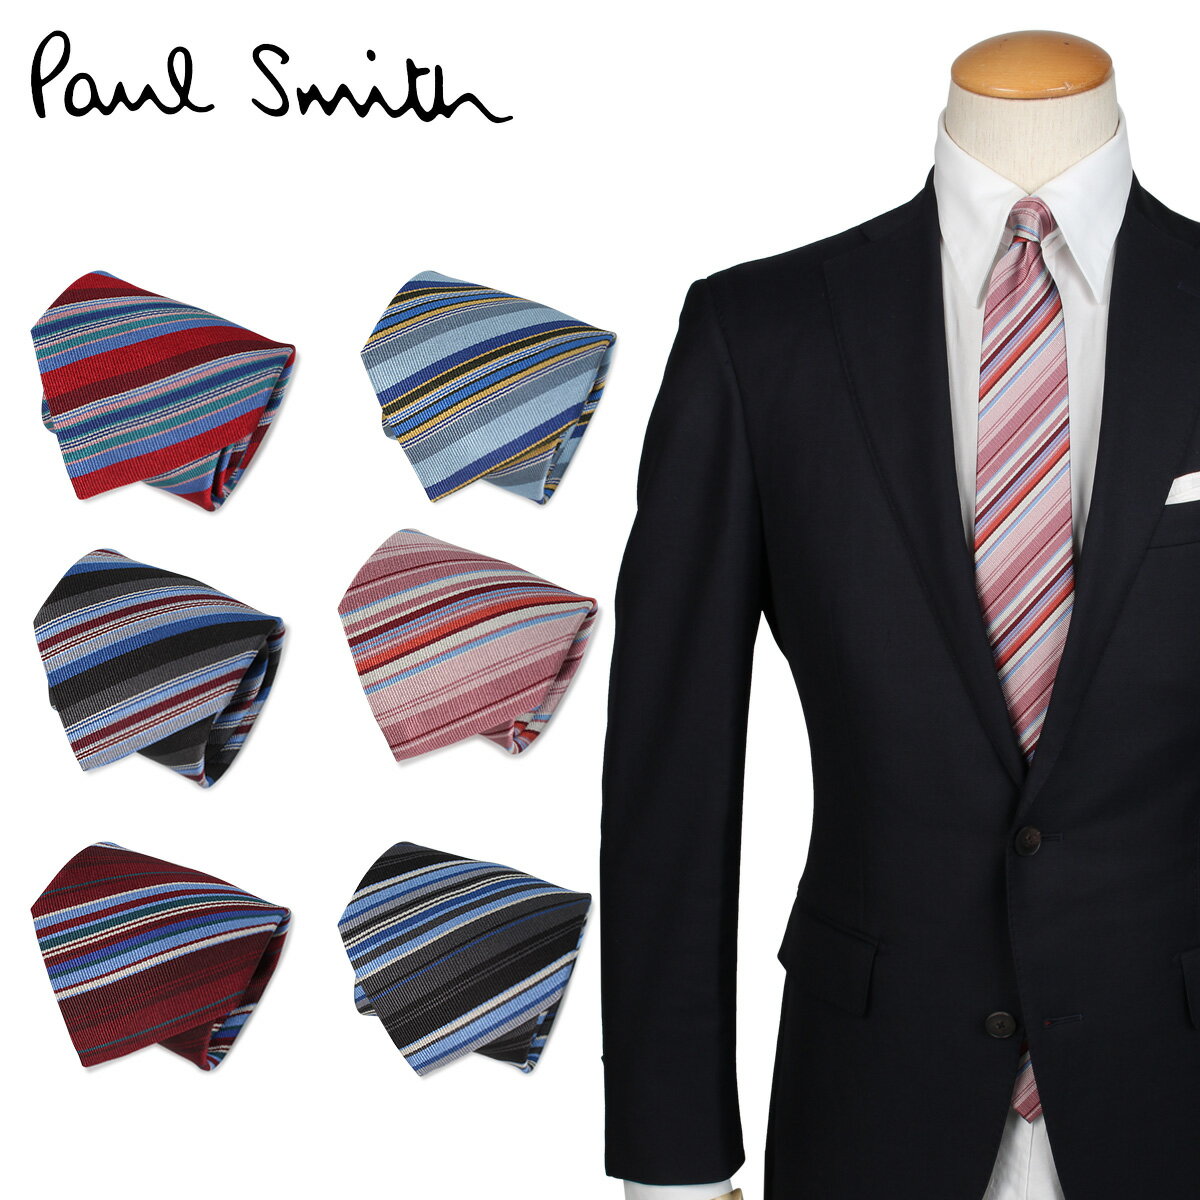 スーツ用ファッション小物, ネクタイ 1000OFF Paul Smith TIE 